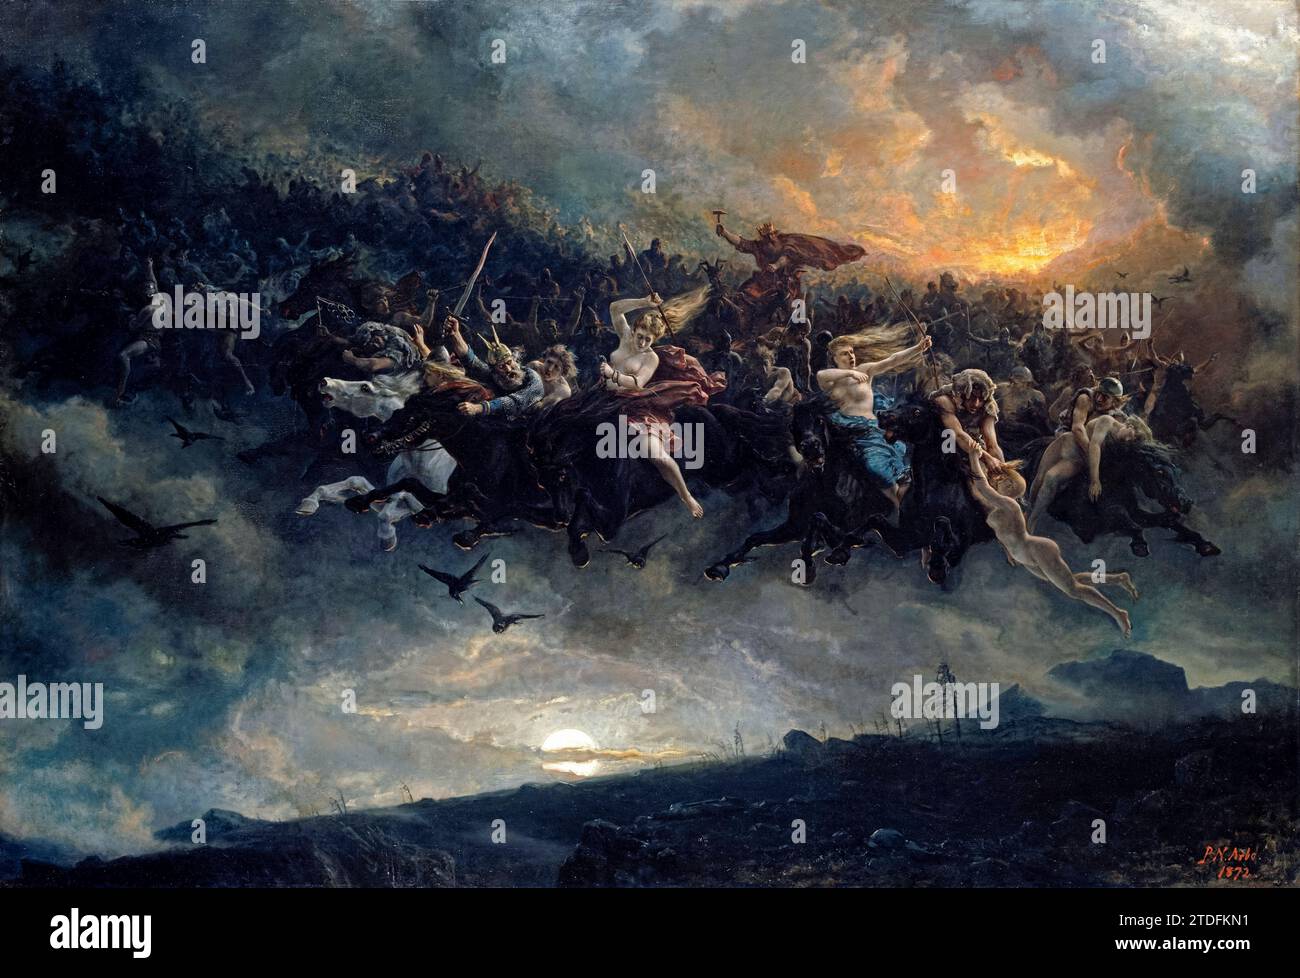 „Die wilde Jagd nach Odin“ 1872 des norwegischen Künstlers Peter Nicolai Arbo (1831-1892), der eine Jagdgruppe zeigt, die Thor in Walküren vermietet hat, basierend auf Johan Sebastian Welhavens Gedicht Asgaardsreien. Stockfoto